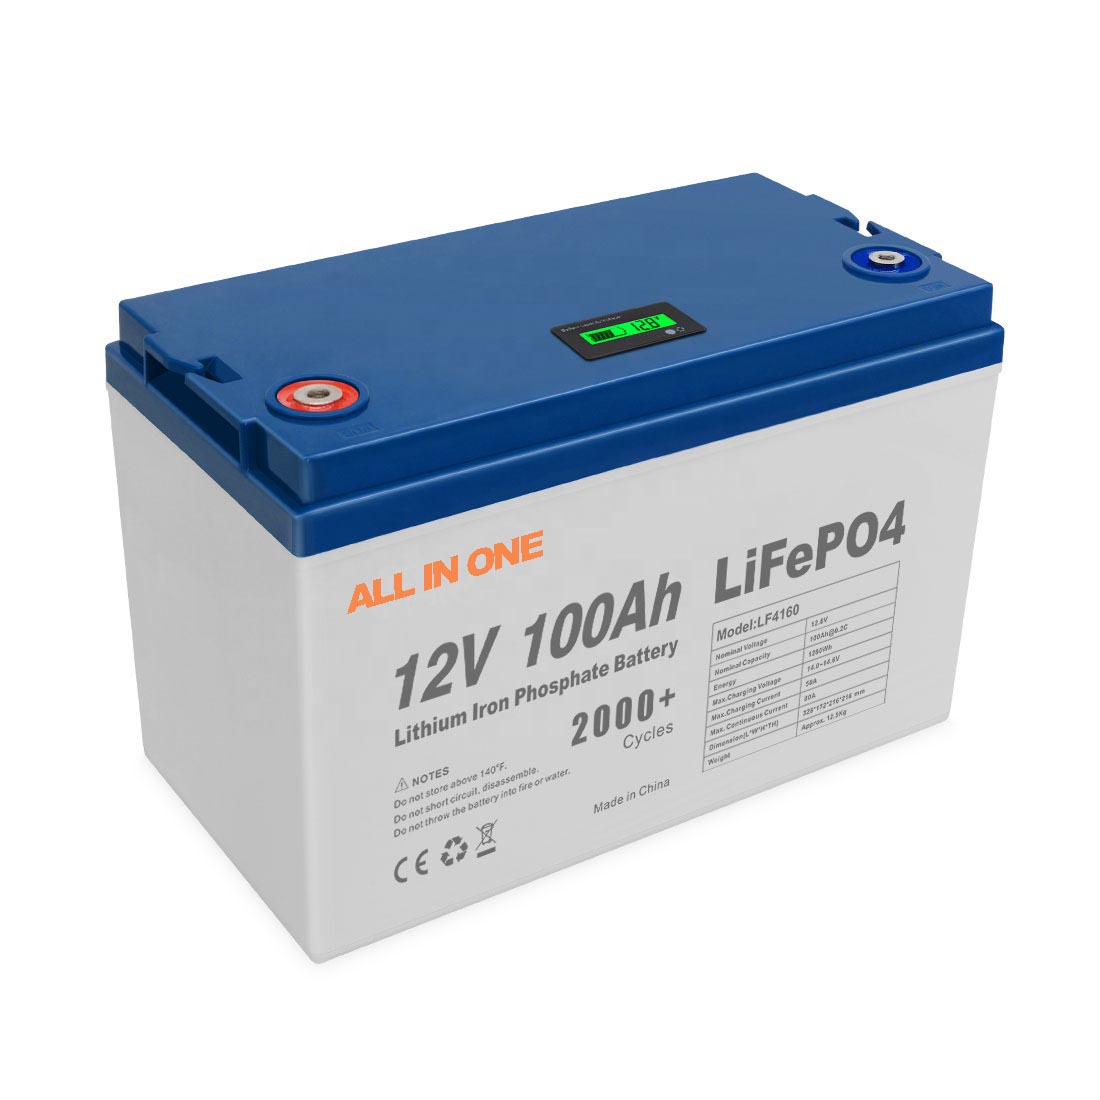 Venta caliente batería recargable LiFePO4 batería 12V 100Ah RV